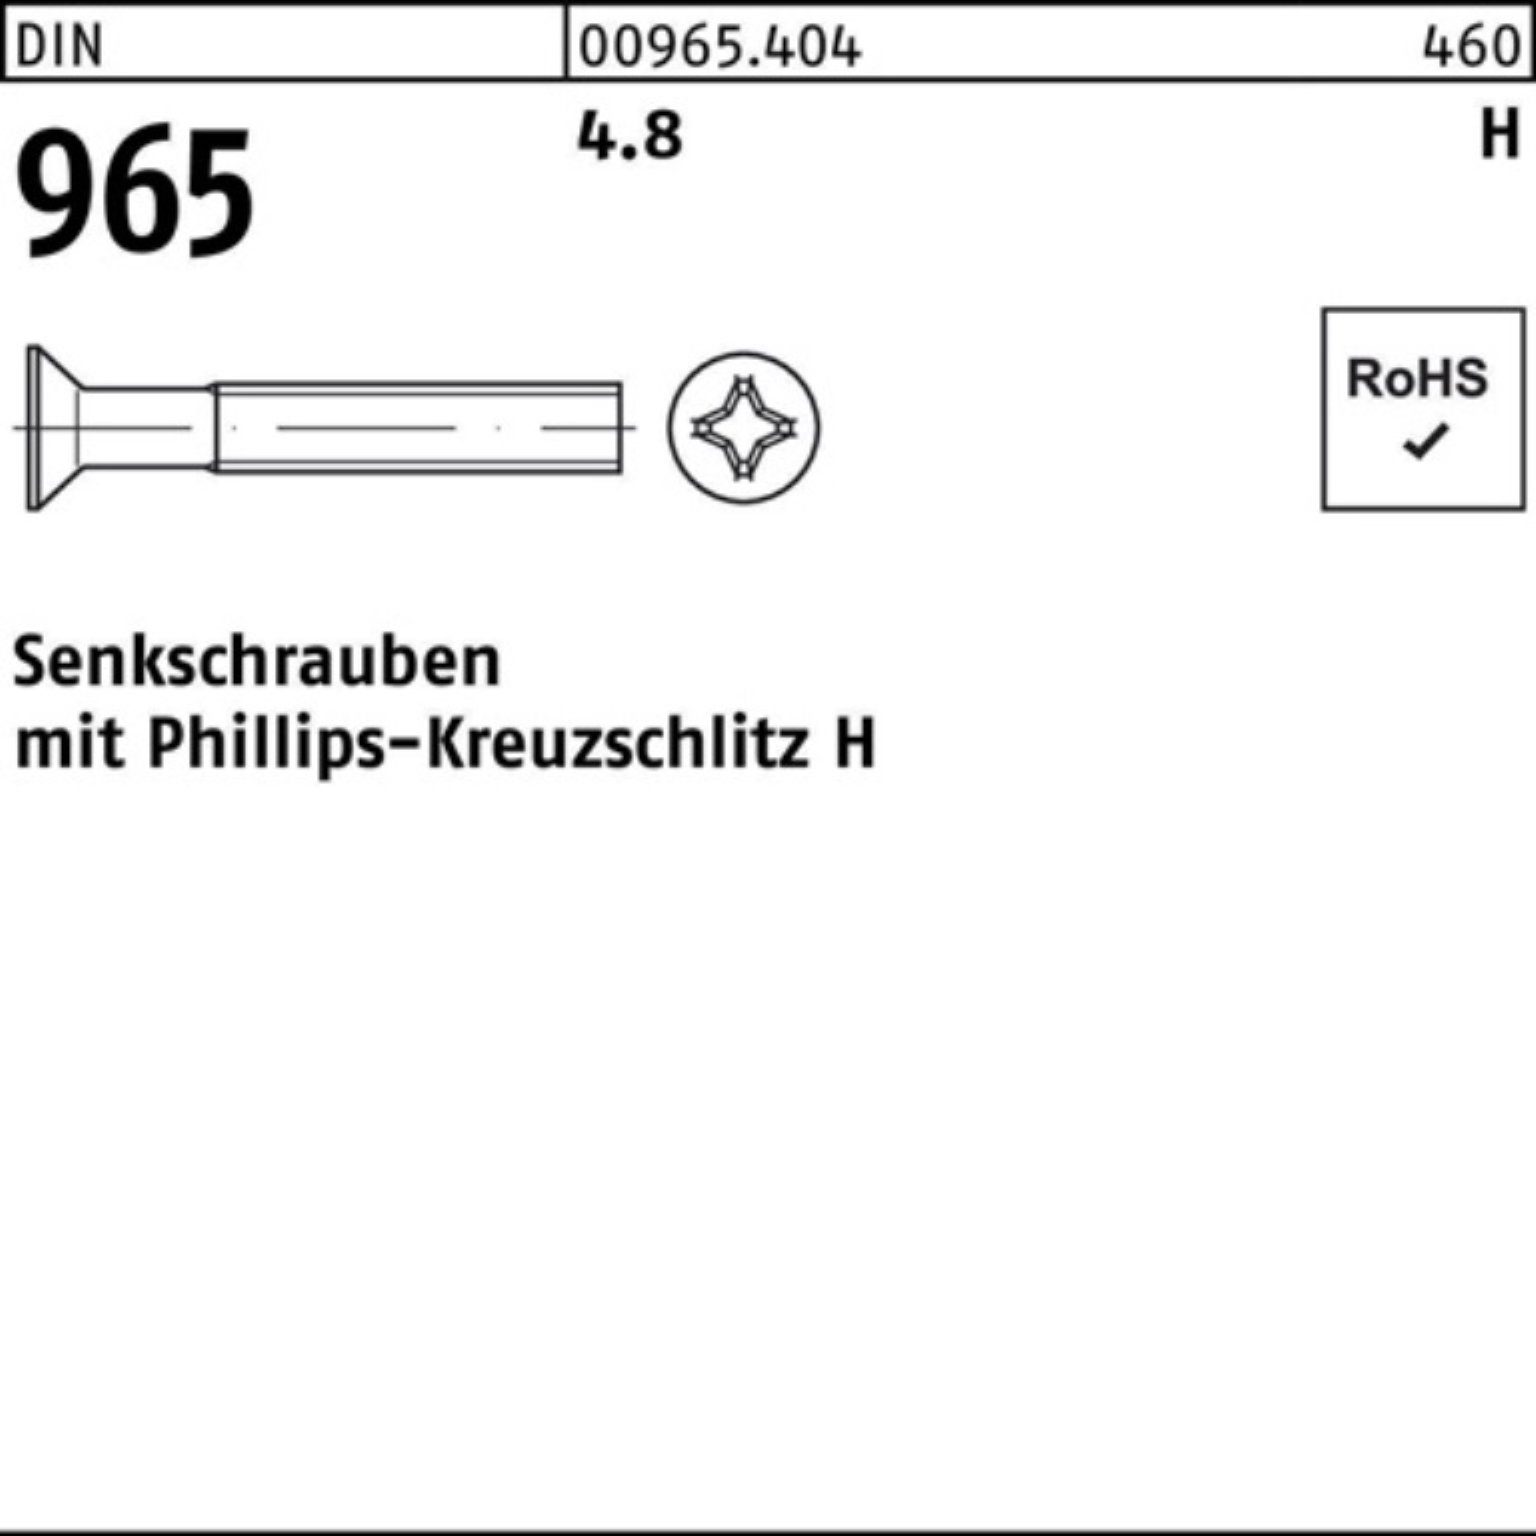 Pack 4.8 Senkschraube 200er 965 PH 4.8 Reyher 30-H 965 DIN 200 Senkschraube DIN M6x Stück